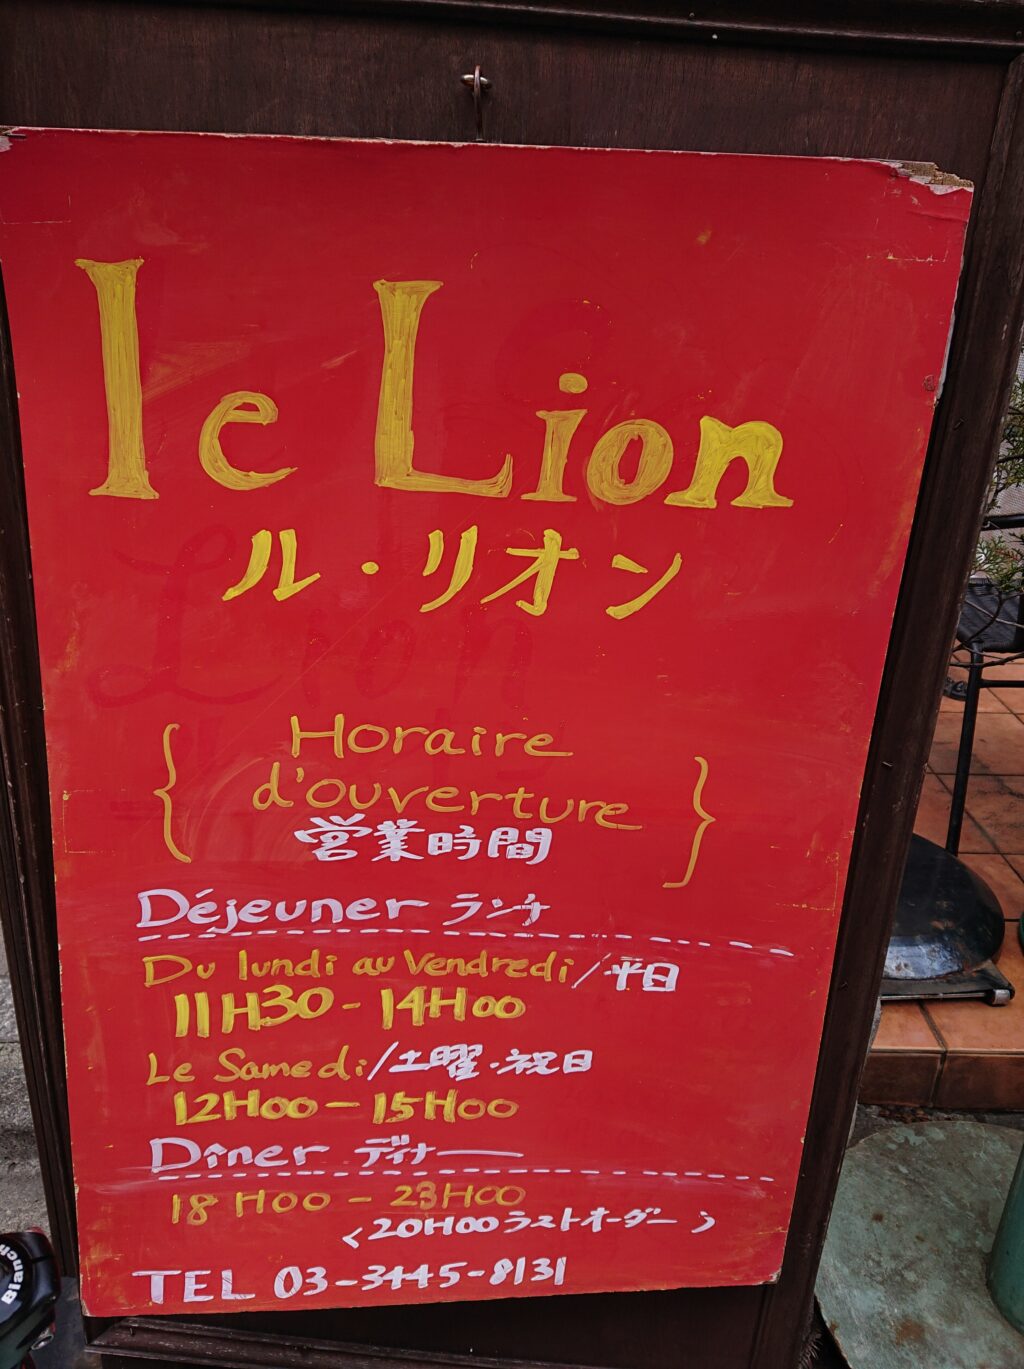 恵比寿 ル・リオン（le Lion） お店の情報